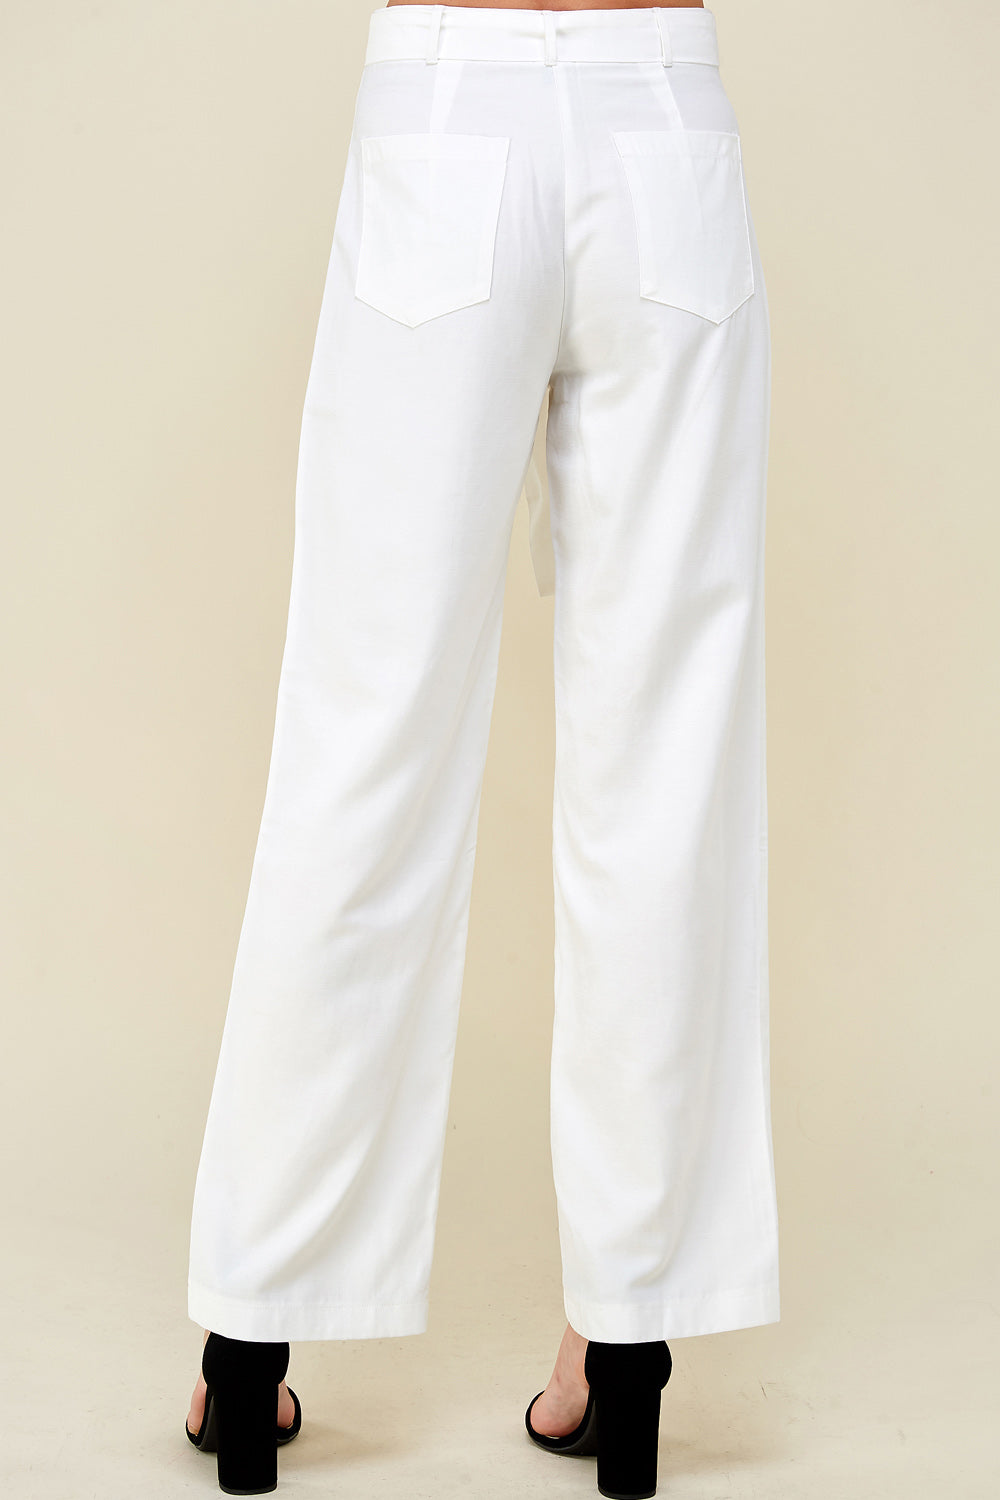 [$5/piece] Belted high waist pants